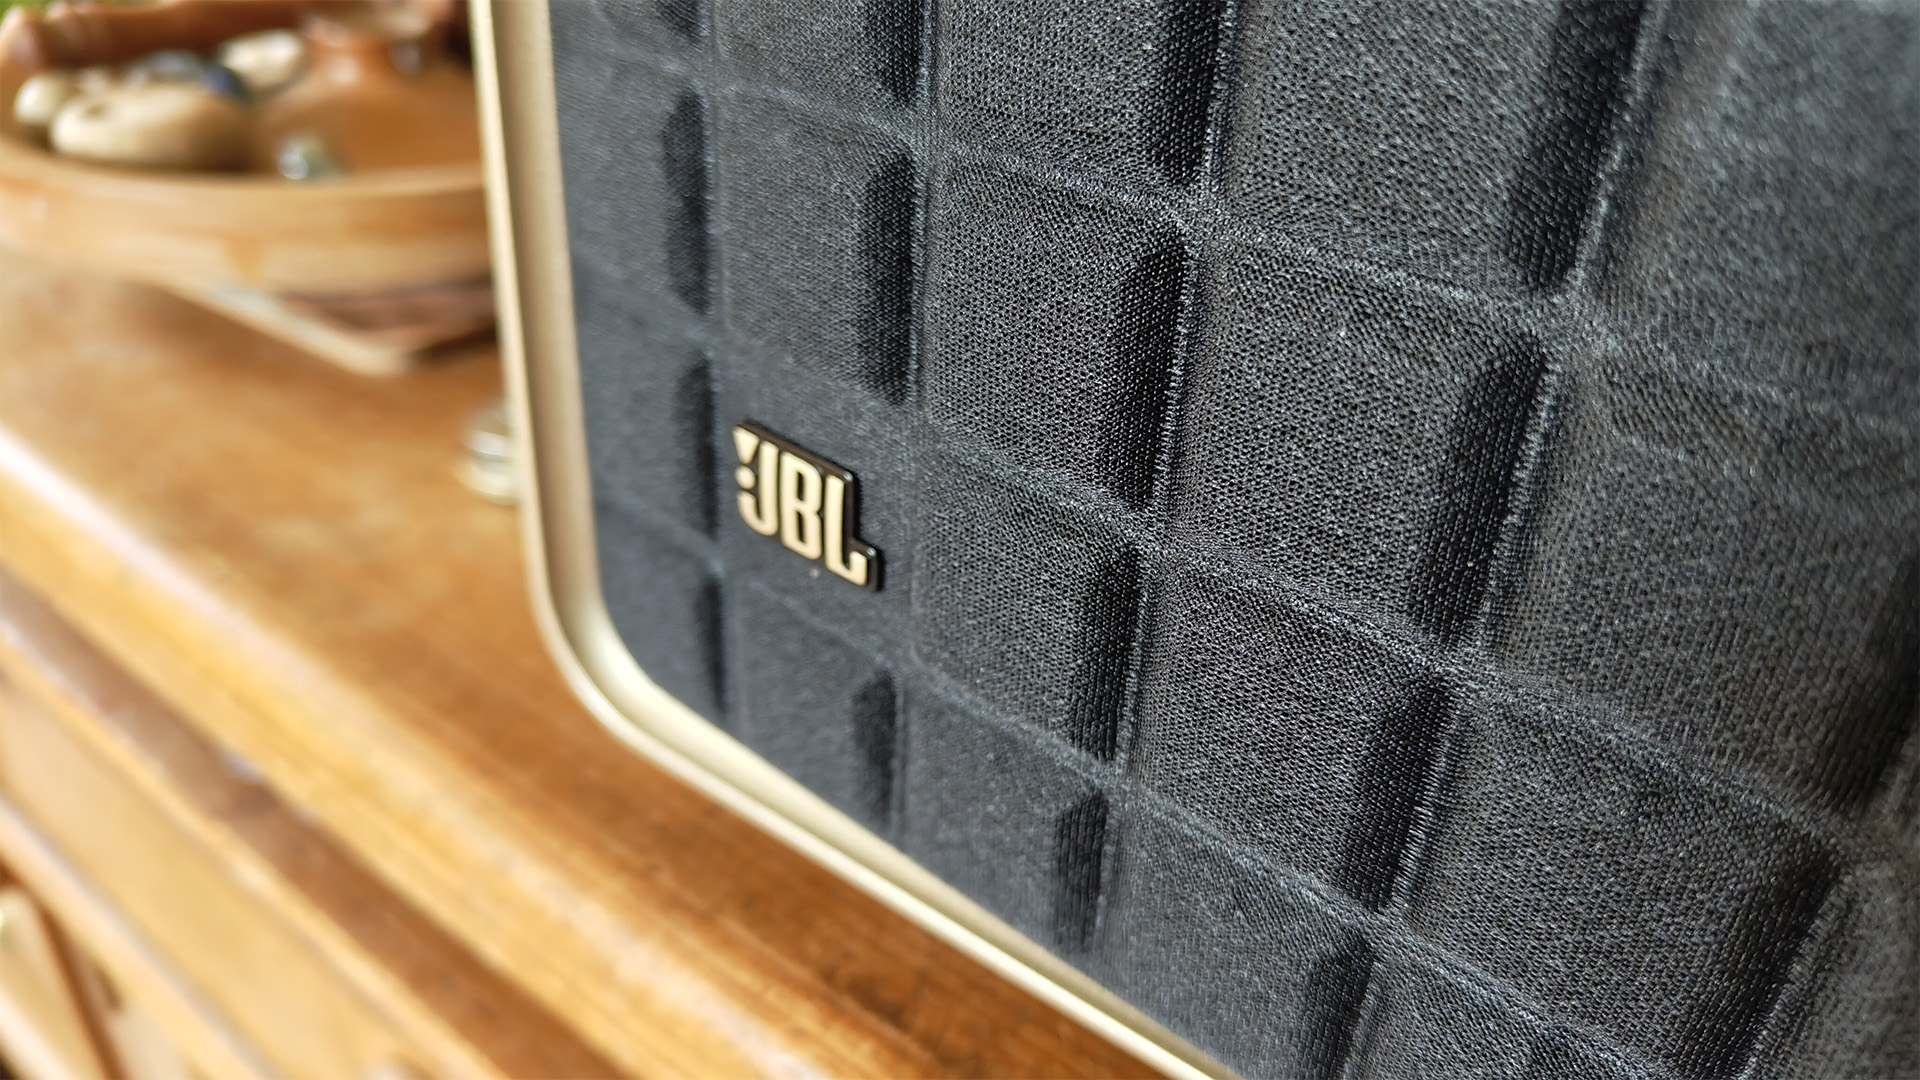 JBL Authentics 500 wireless speaker close up on JBL logo